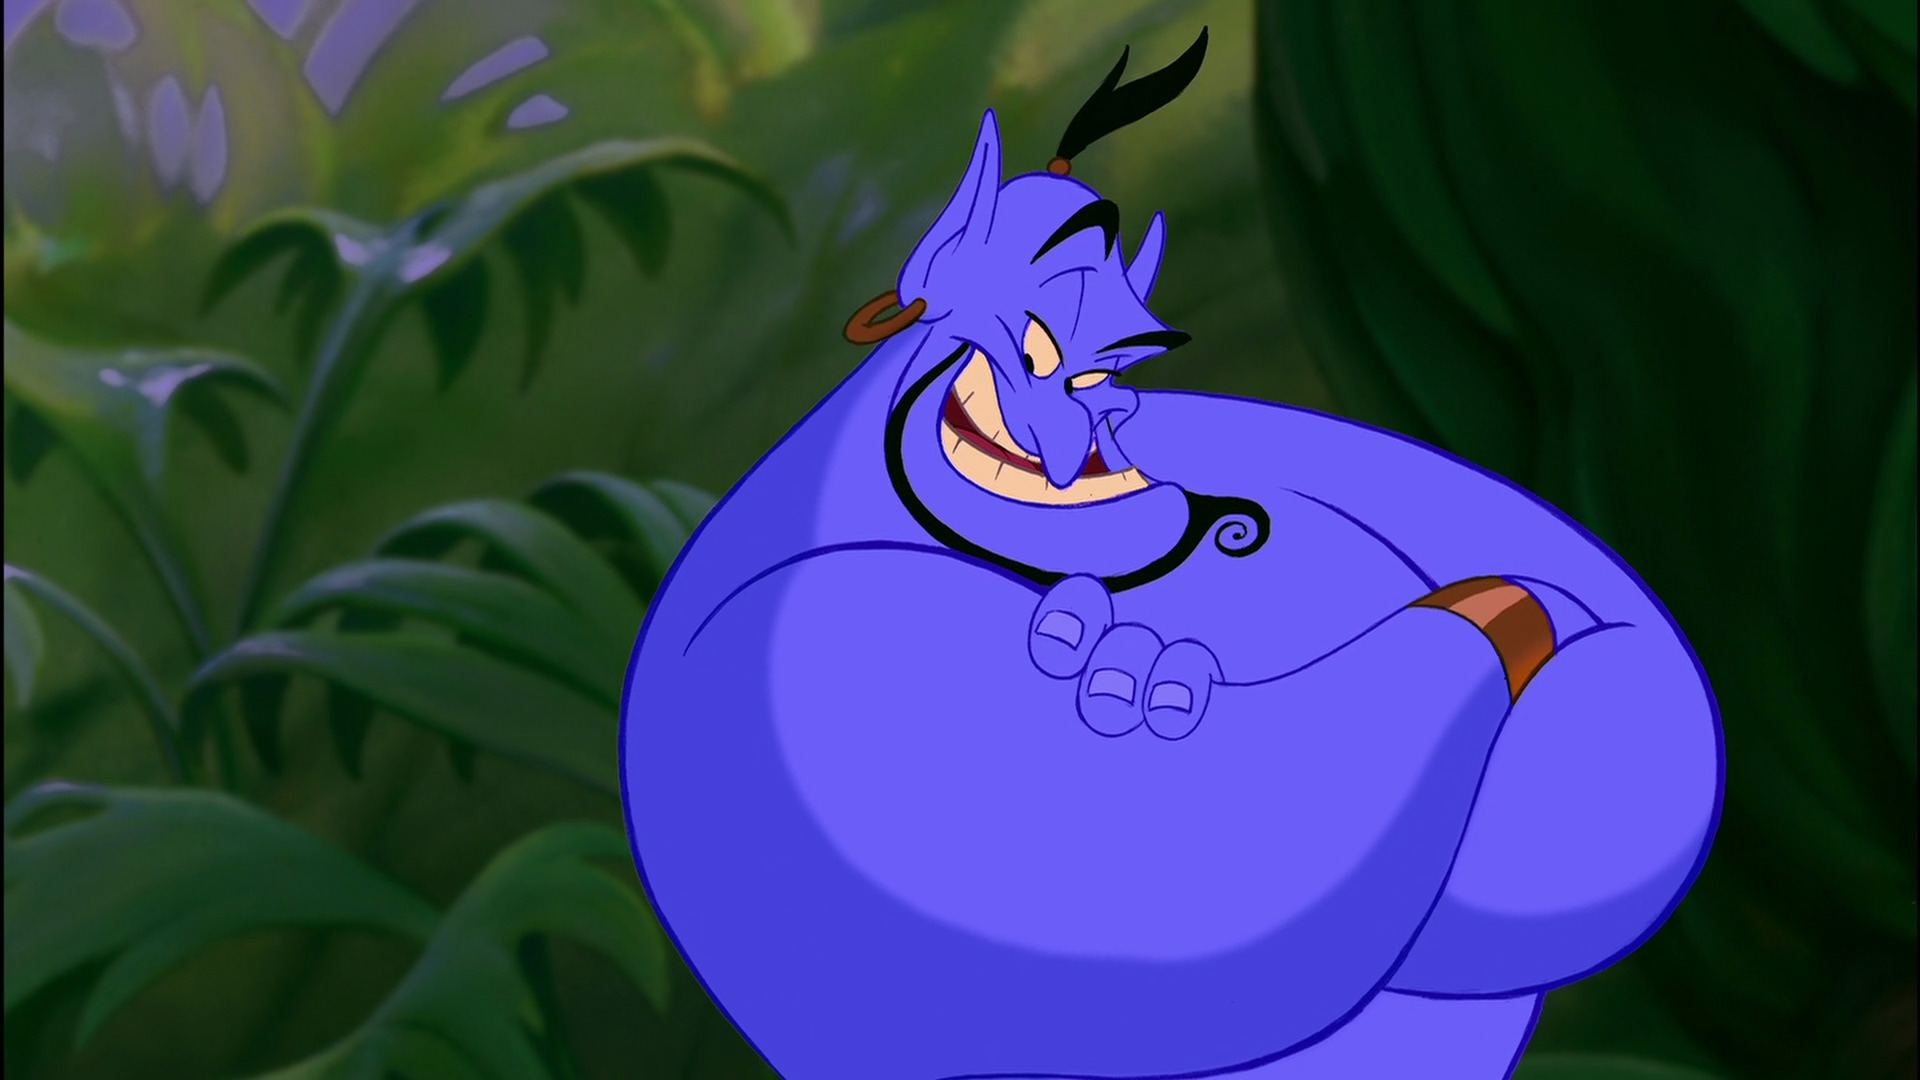 Robin Williams Estate Puts A Stop To Aladdin Prequel